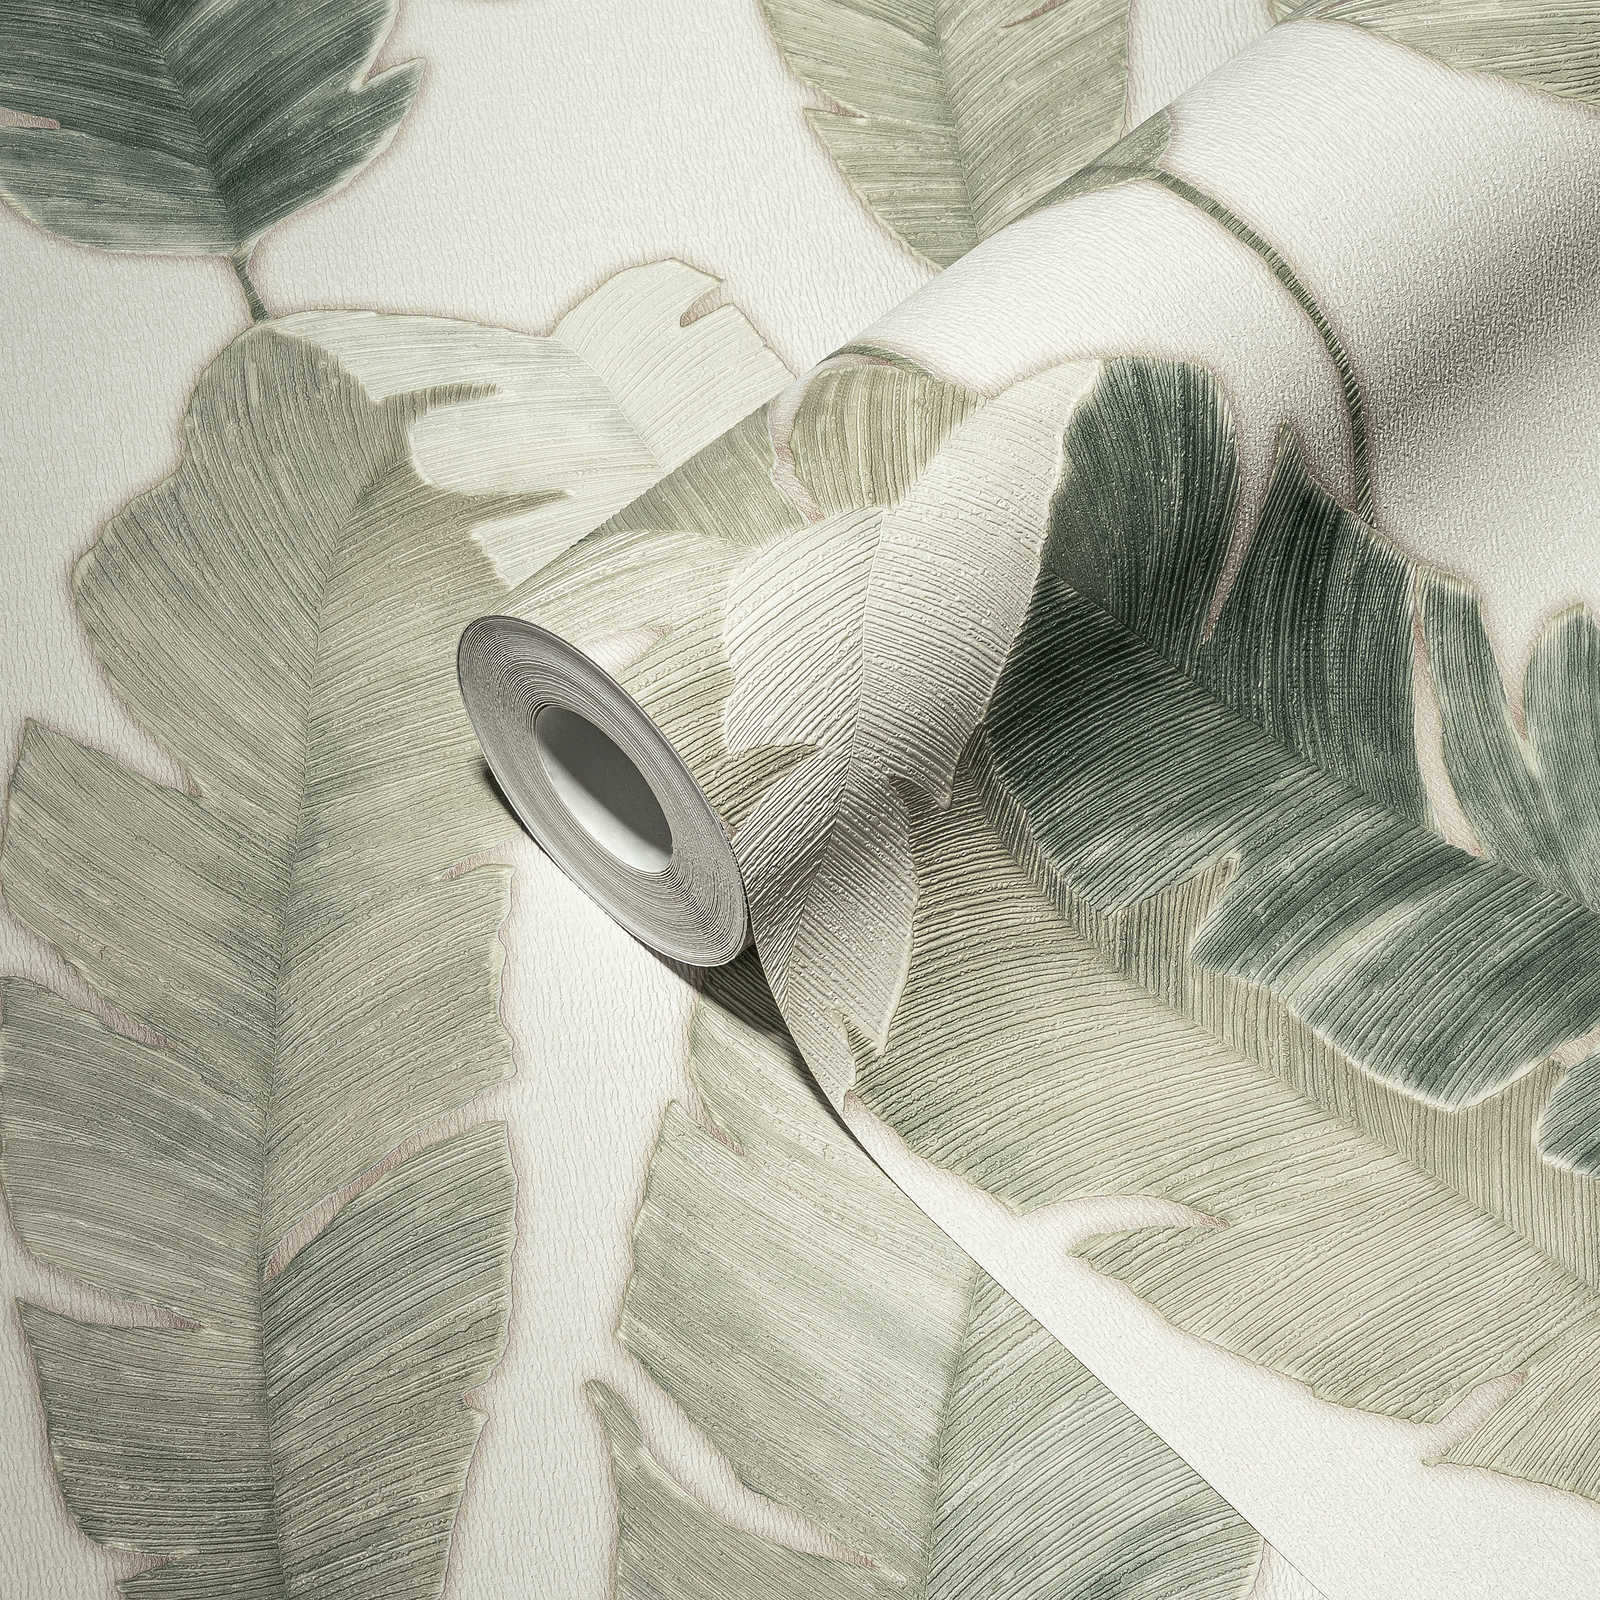             Papel pintado no tejido con hojas de palmera en color claro - blanco, verde, azul
        